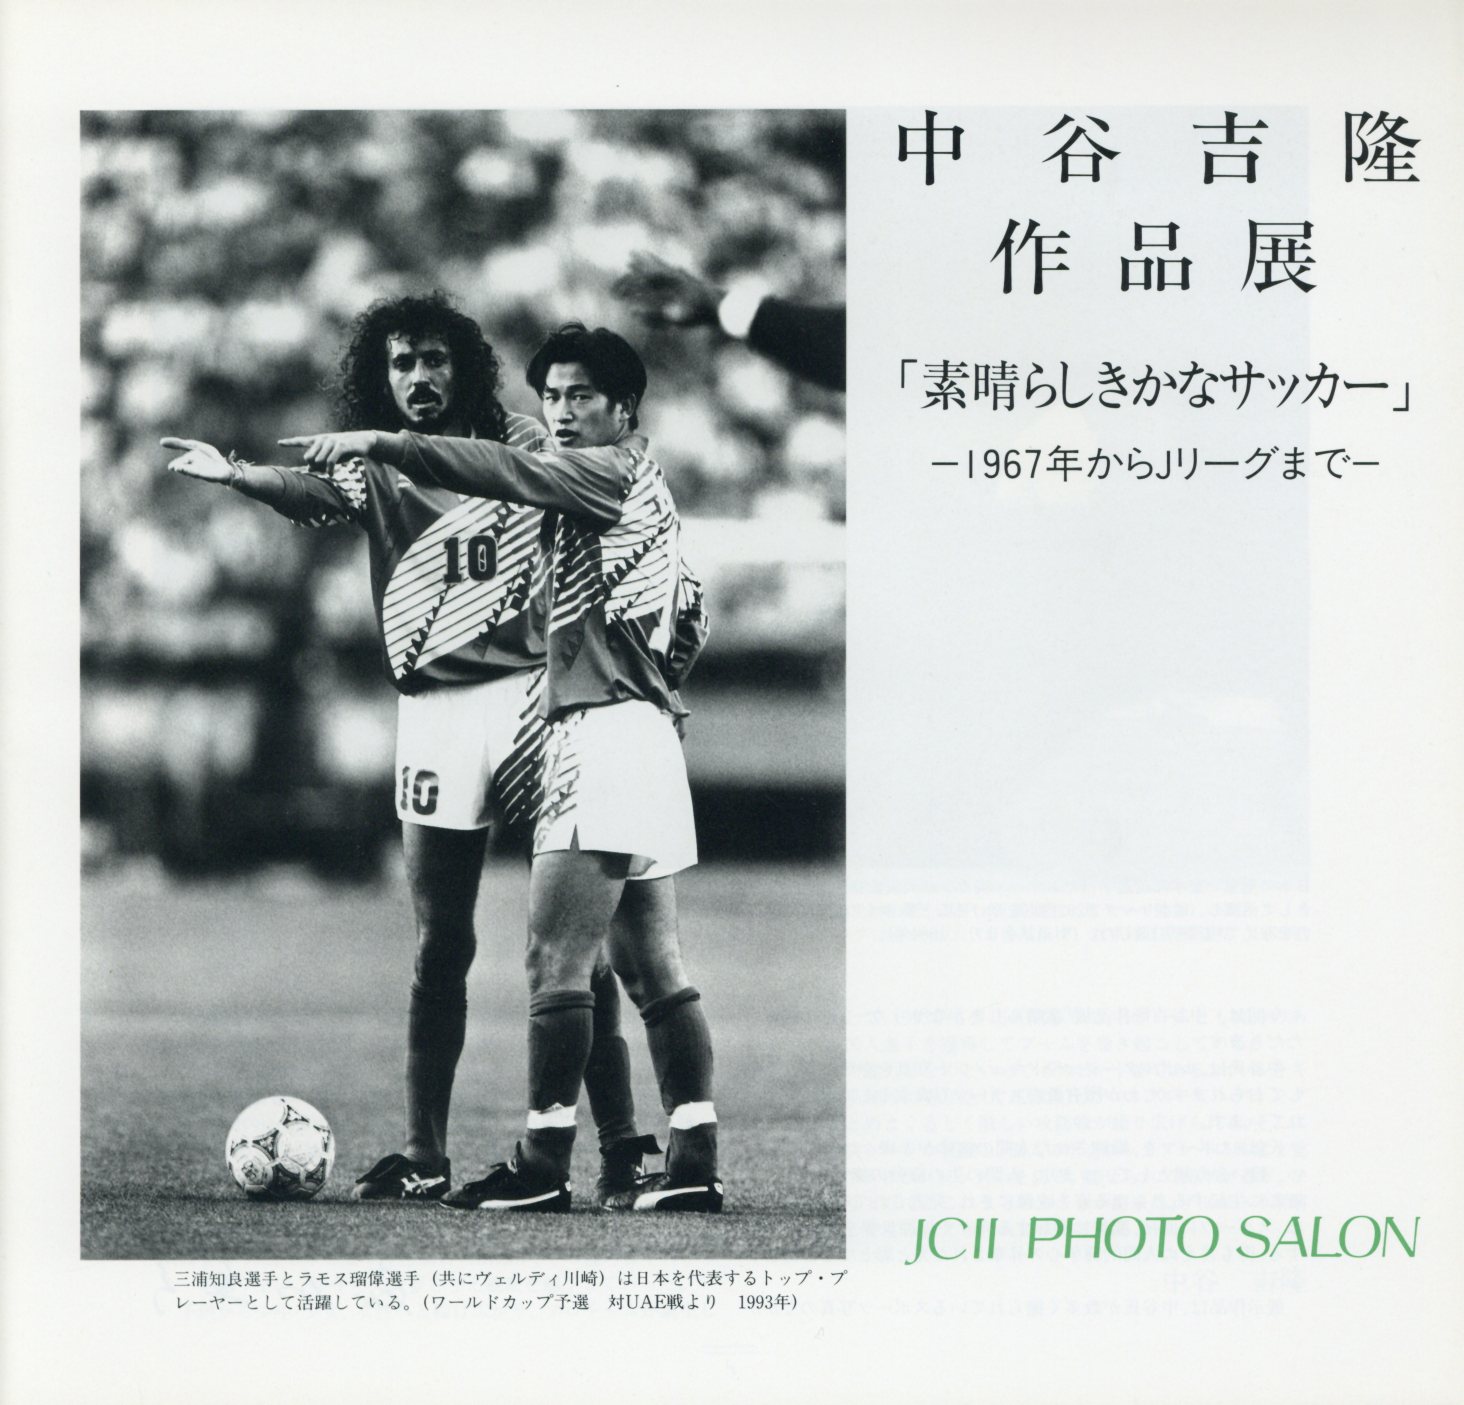 日本カメラ博物館 Jcii Camera Museum 中谷吉隆作品展 素晴らしきかなサッカー 1967年からjリーグまで